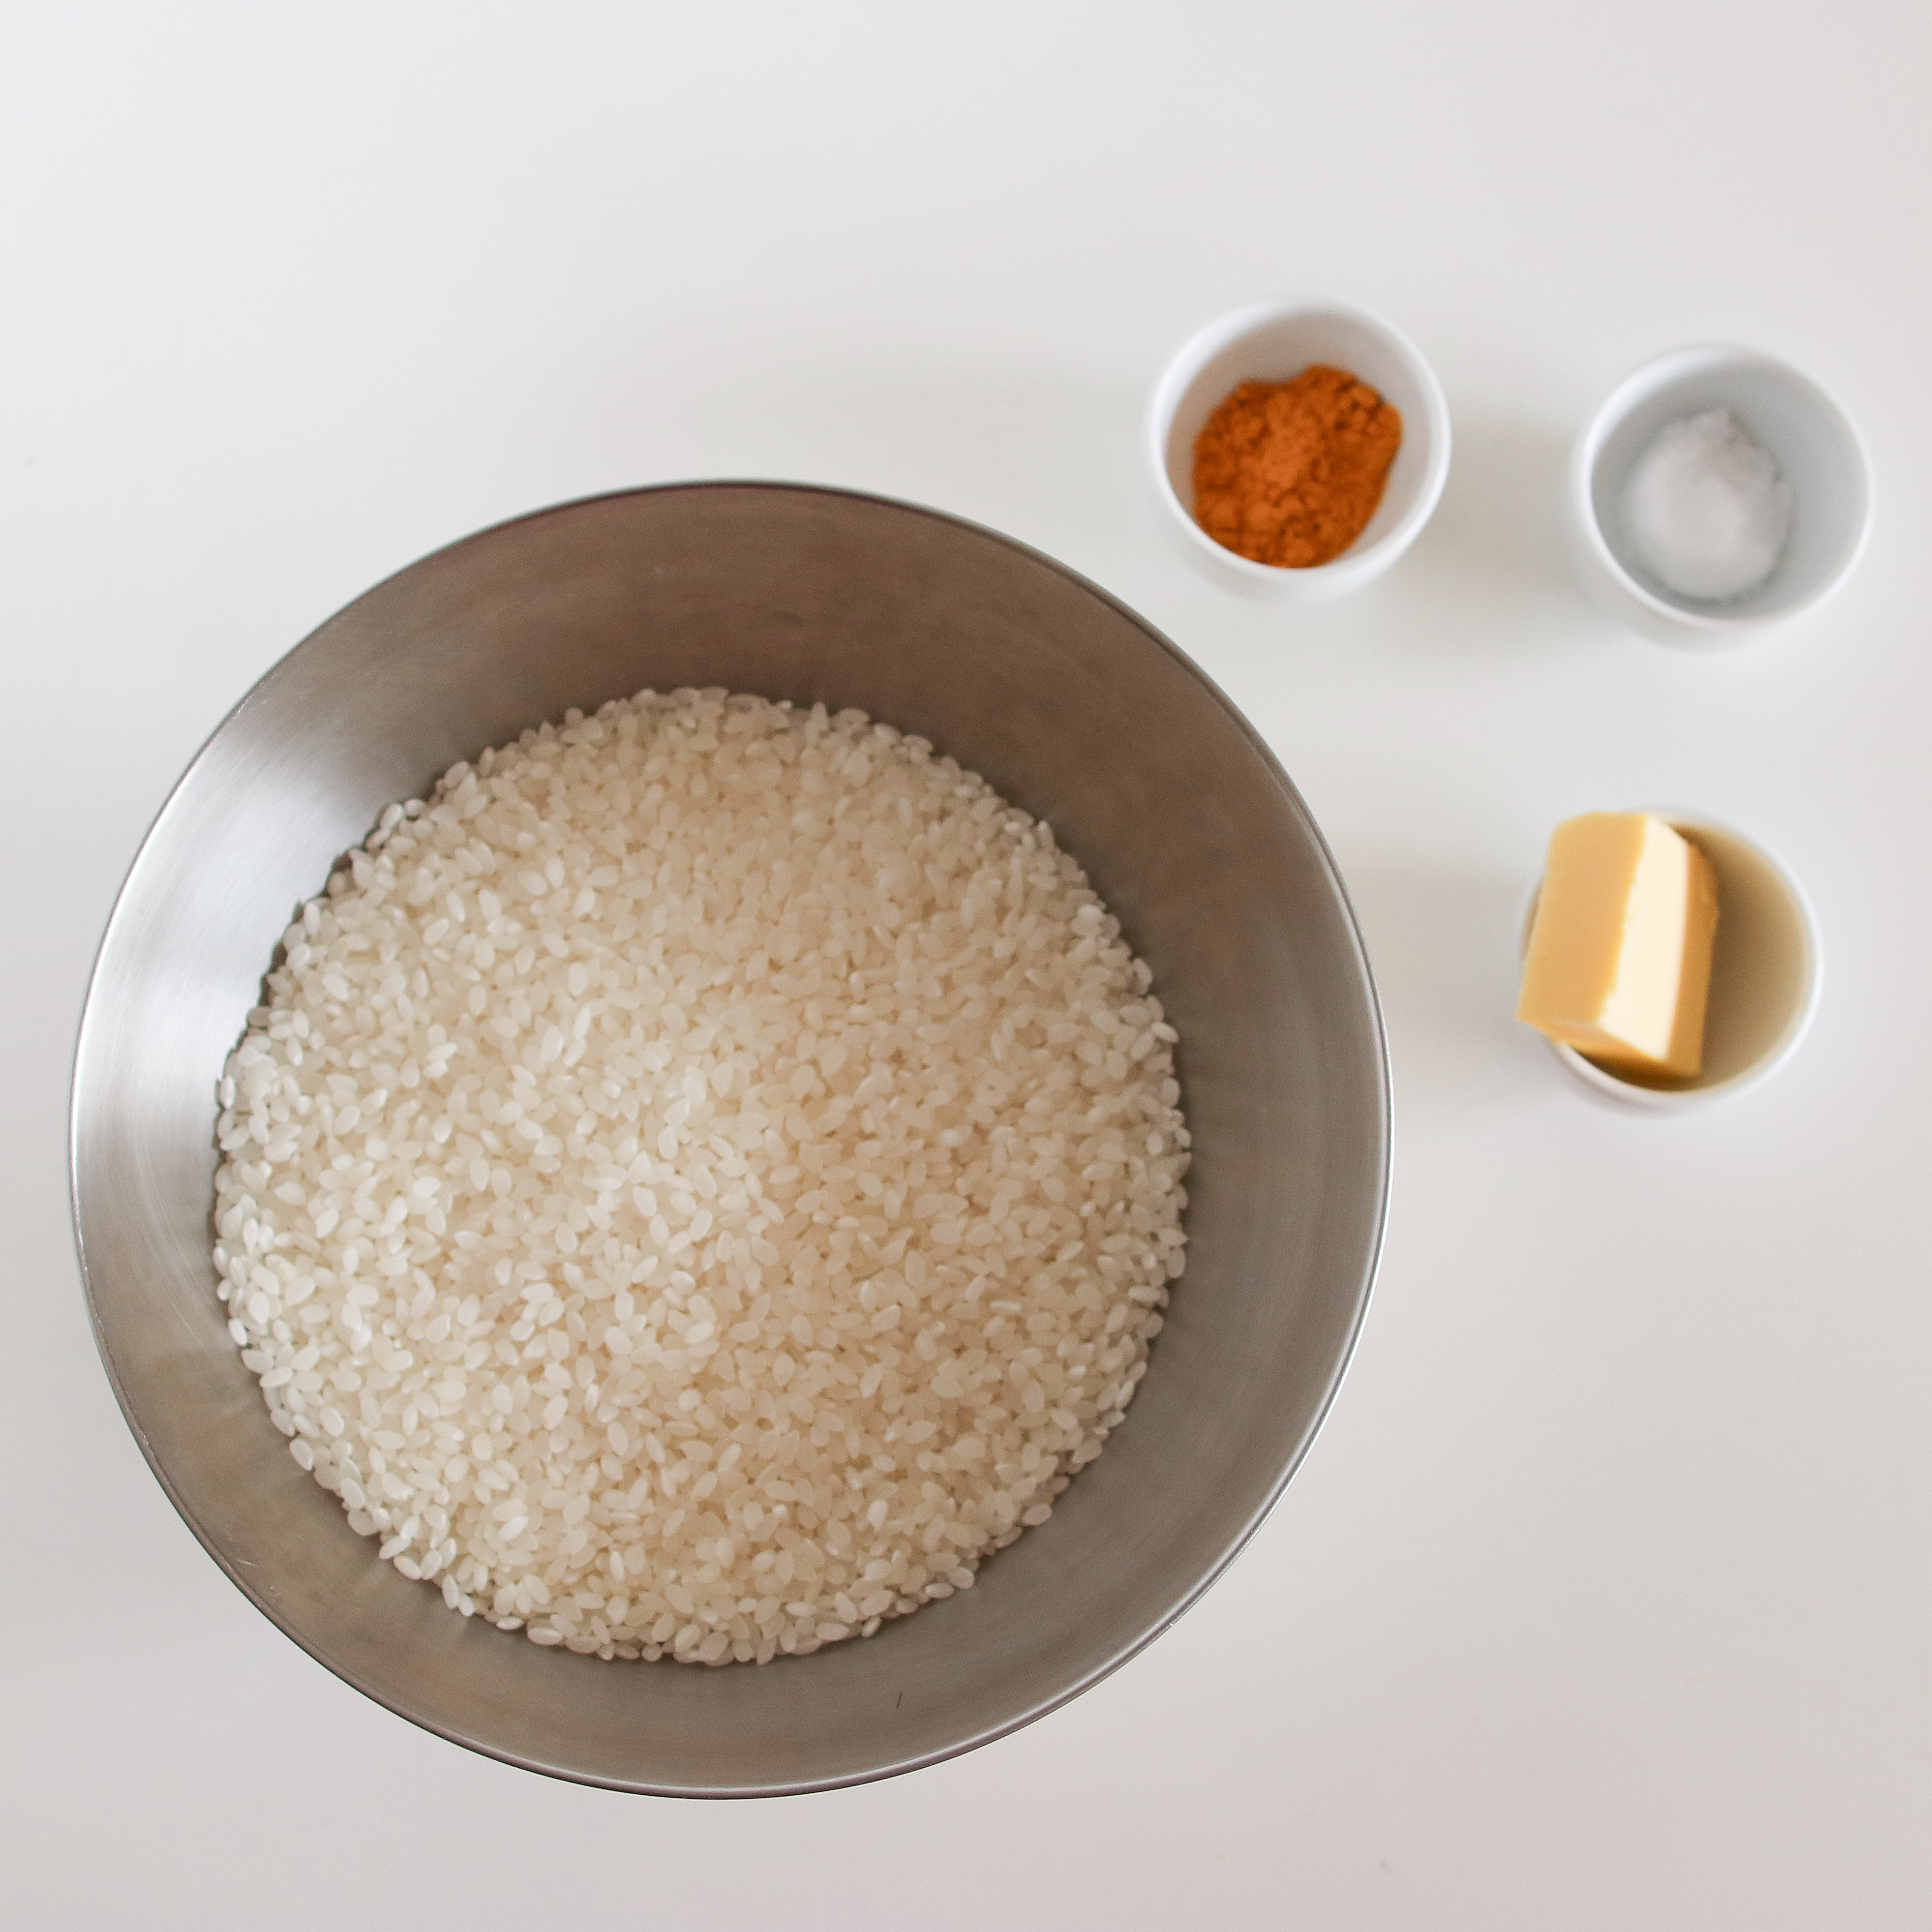 米はさっとといでざるにあげたらすぐにマルチグリルのキャセロールに入れ、水、塩、ターメリックを加えて全体を混ぜる。